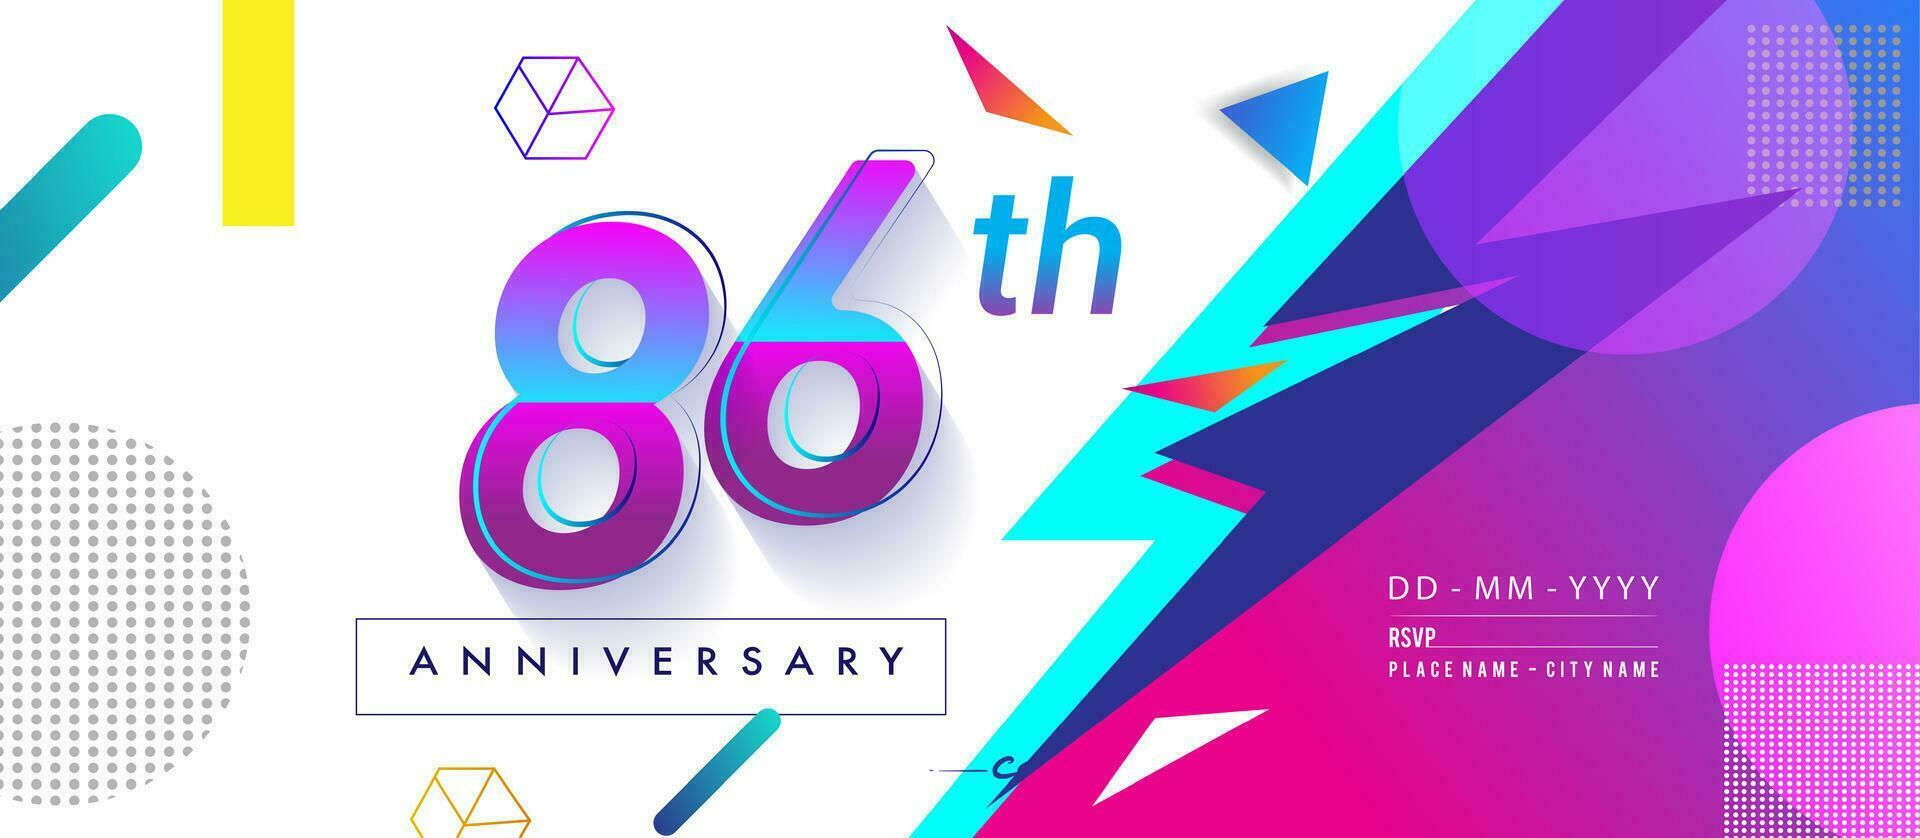 86º años aniversario logo, vector diseño cumpleaños celebracion con vistoso geométrico antecedentes y círculos forma.